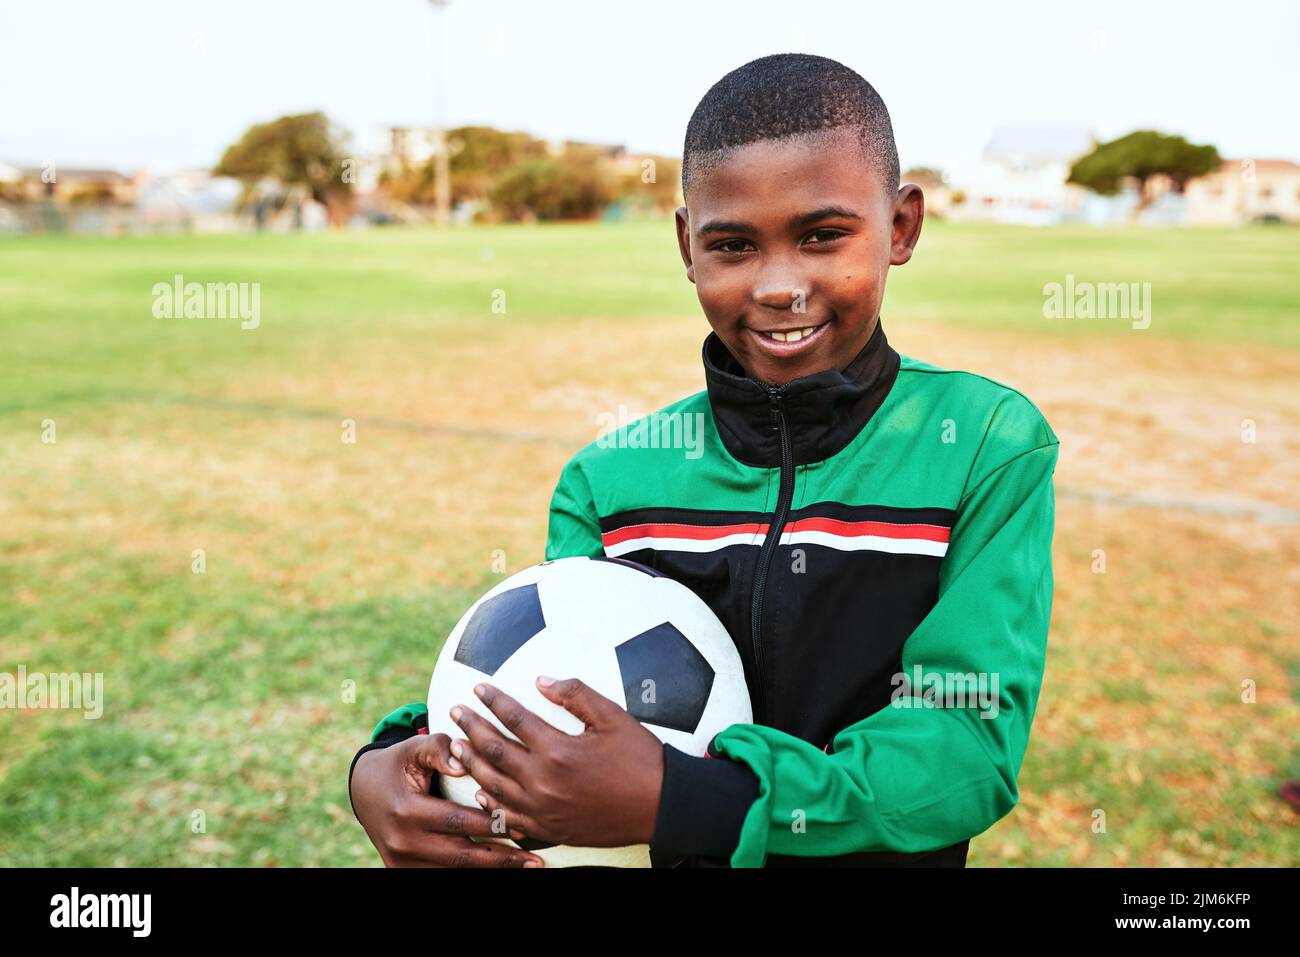 Sport zu treiben kann das Selbstvertrauen von Kindern stark verbessern. Porträt eines Jungen, der auf einem Sportplatz Fußball spielt. Stockfoto